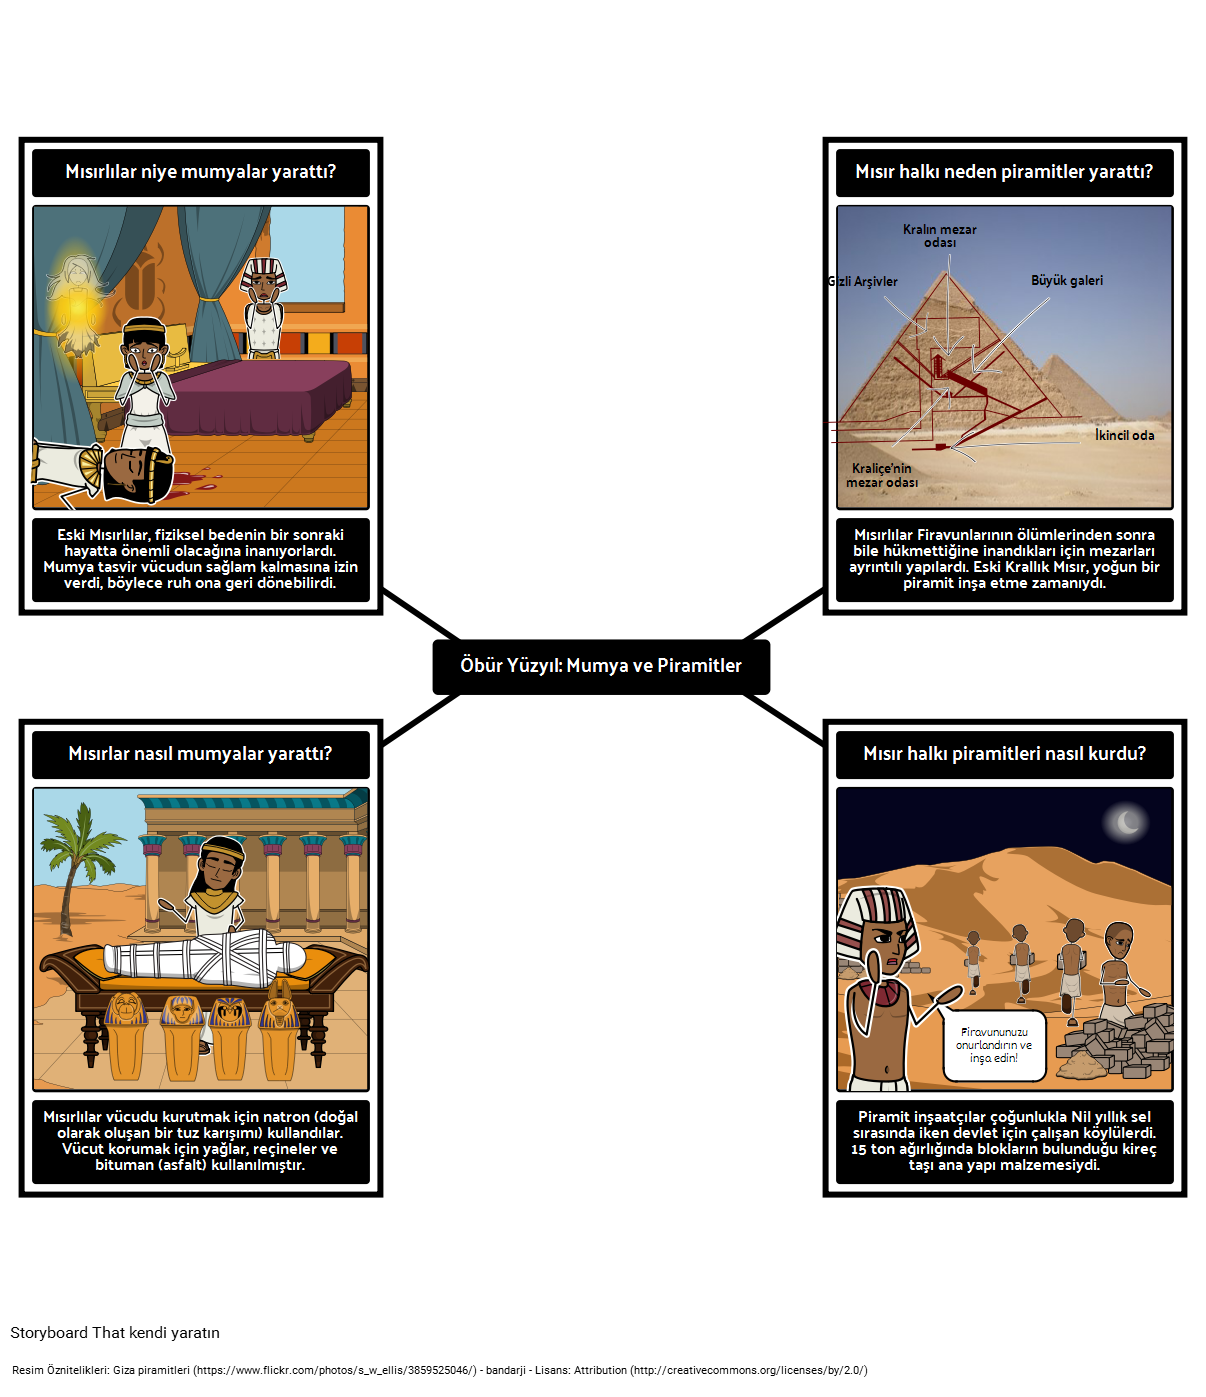 Eski Mısır Giriş - Mumya ve Piramitler